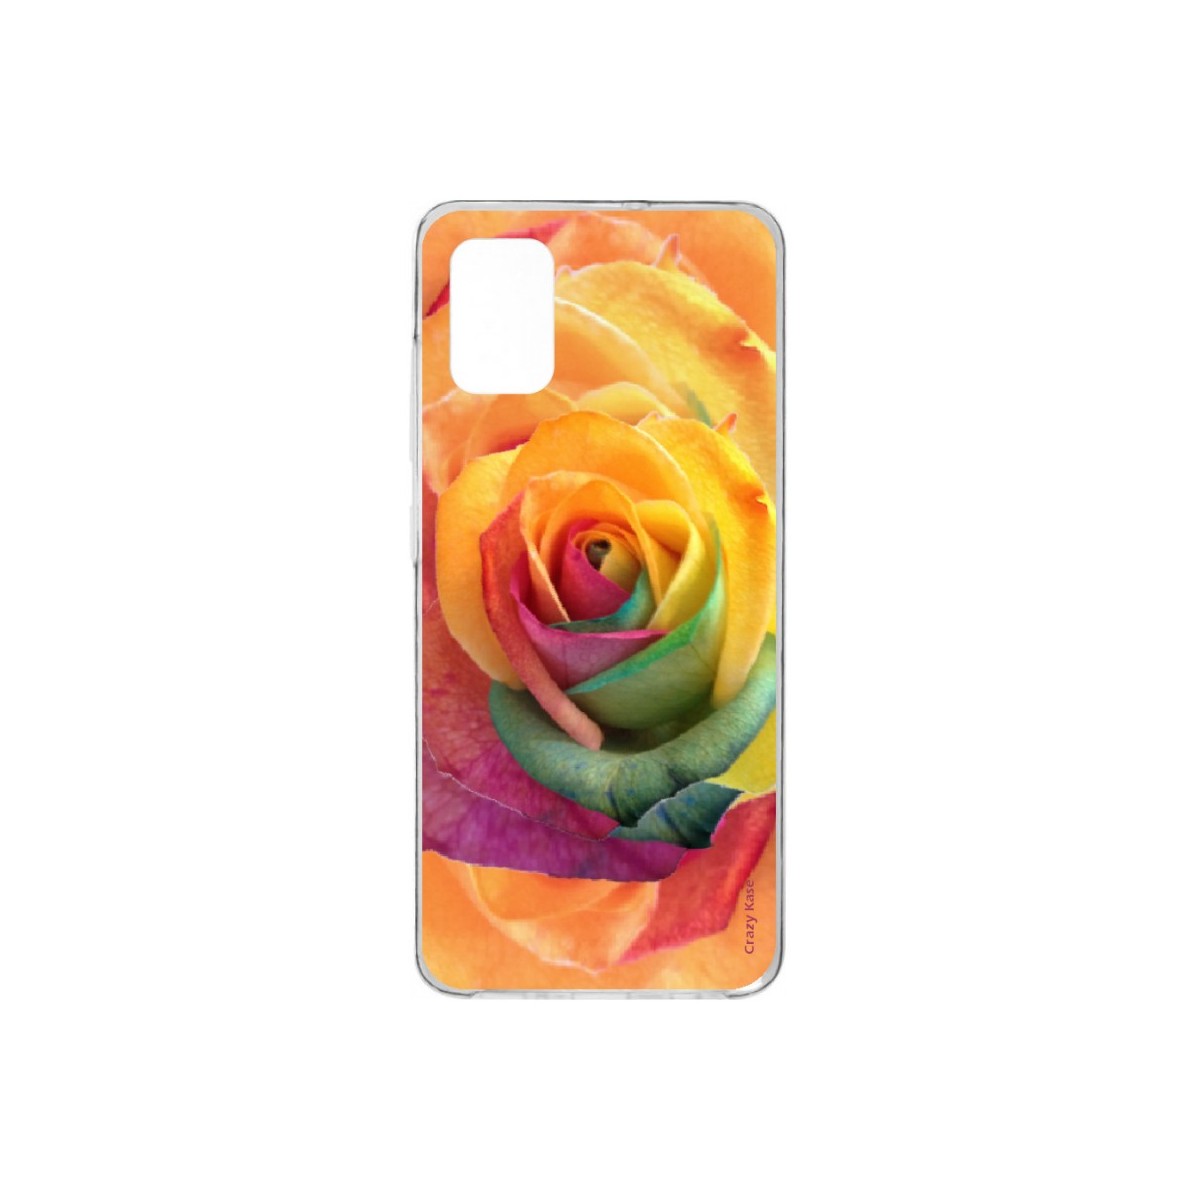 Coque pour Samsung Galaxy A41 souple Rose fleur colorée Crazy Kase